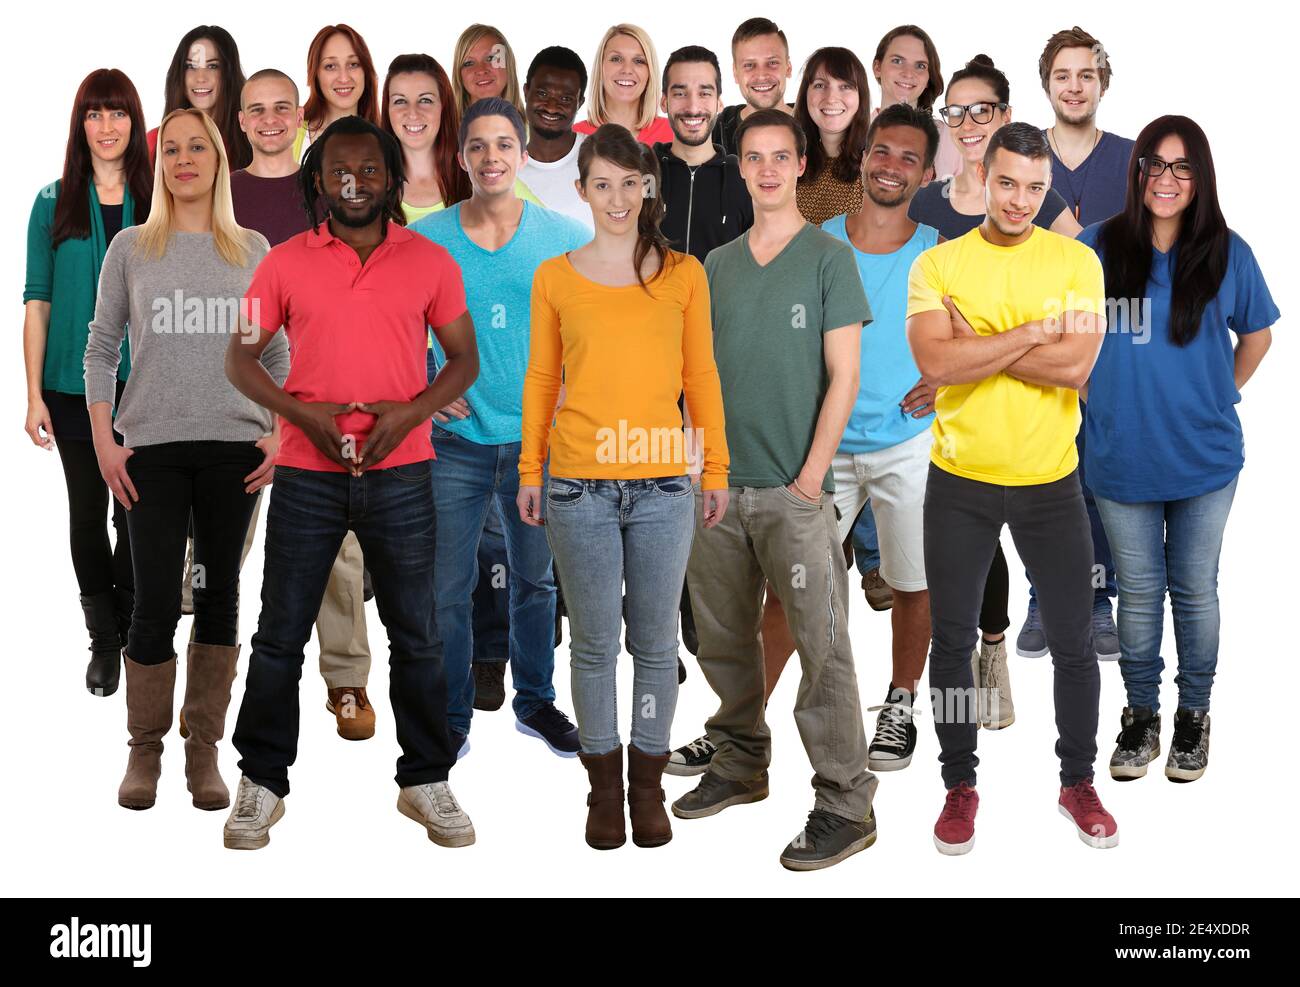 Multikulturelle Gruppe von jungen Menschen glücklich lächelnd Vielfalt isoliert auf Ein weißer Hintergrund Stockfoto